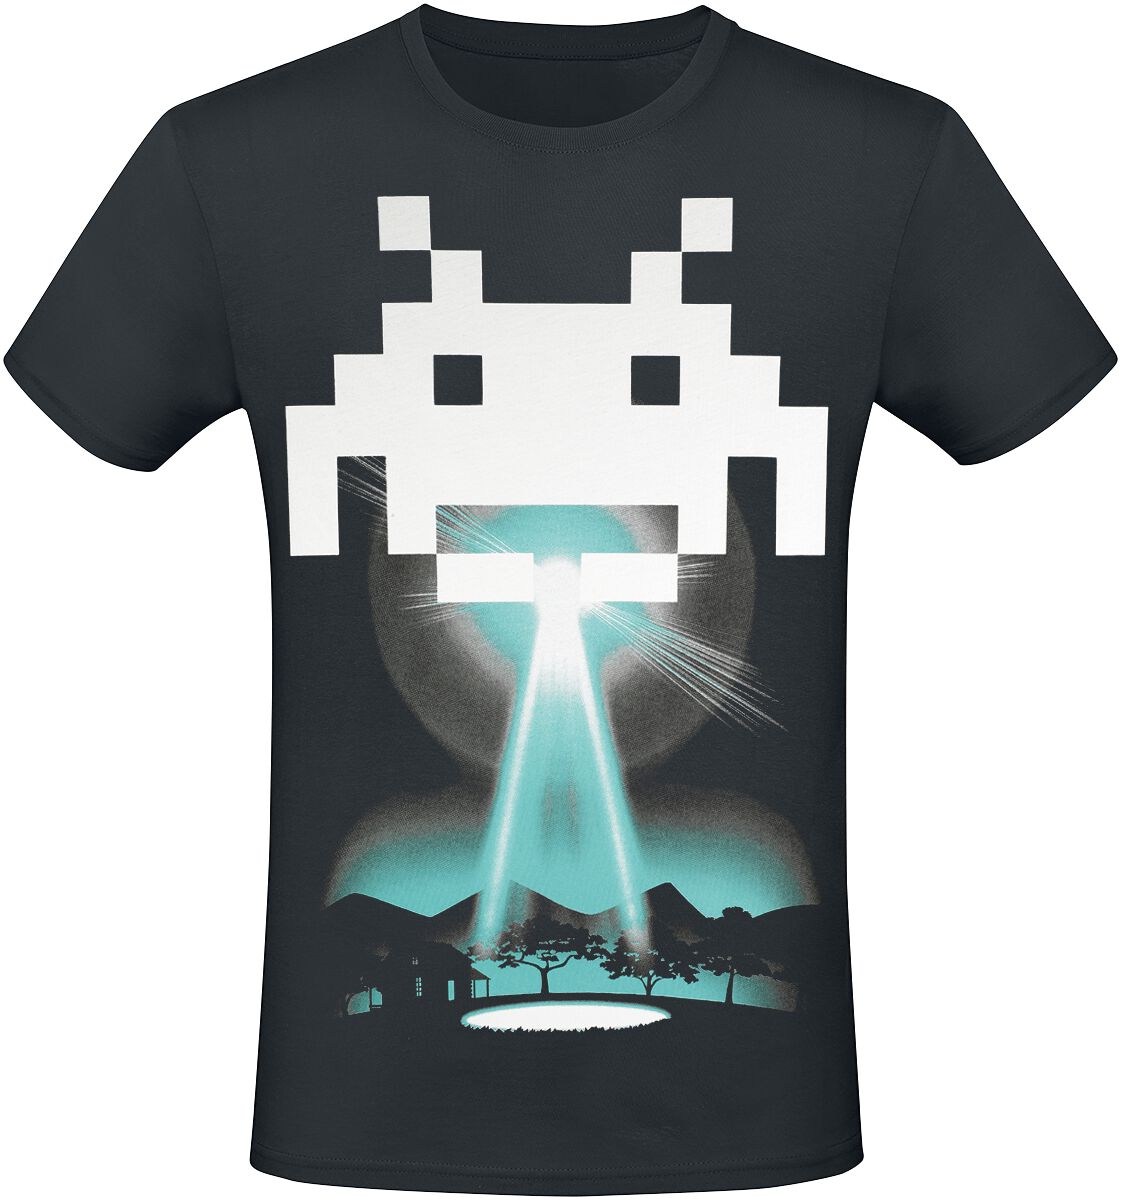 Space Invaders - Gaming T-Shirt - Beam Me Up Alien - XS bis 3XL - für Männer - Größe M - schwarz  - EMP exklusives Merchandise! von Space Invaders